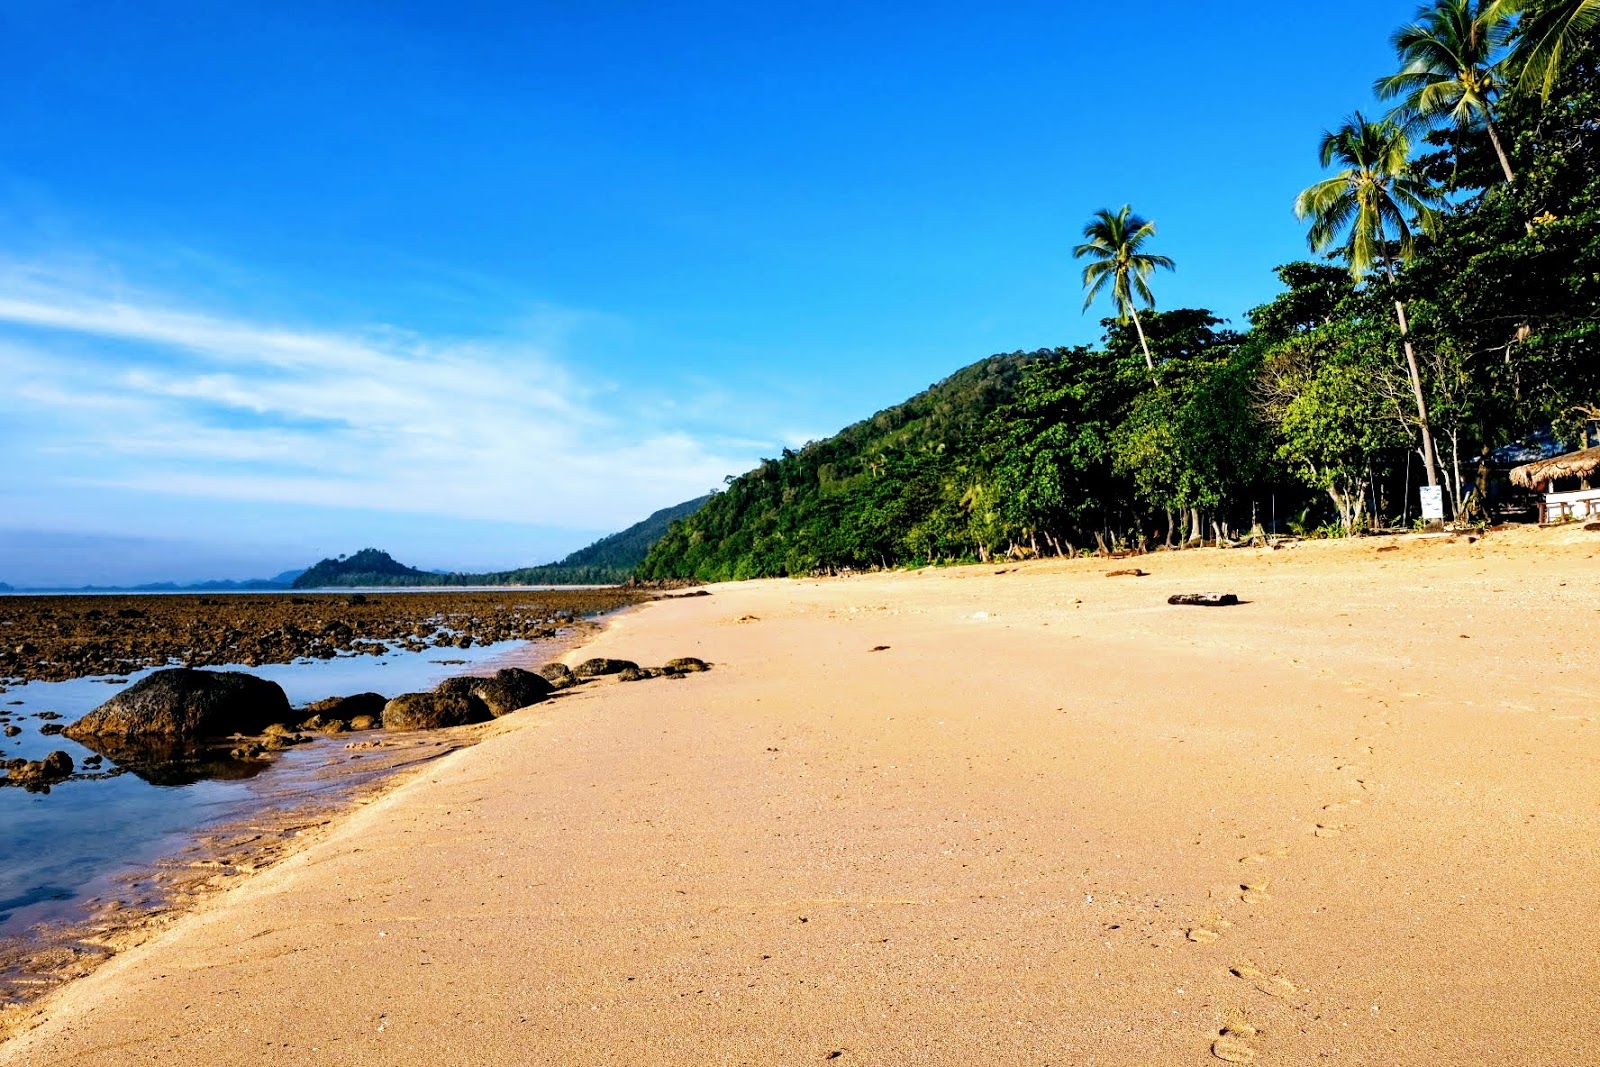 Fotografie cu Wild beach - locul popular printre cunoscătorii de relaxare